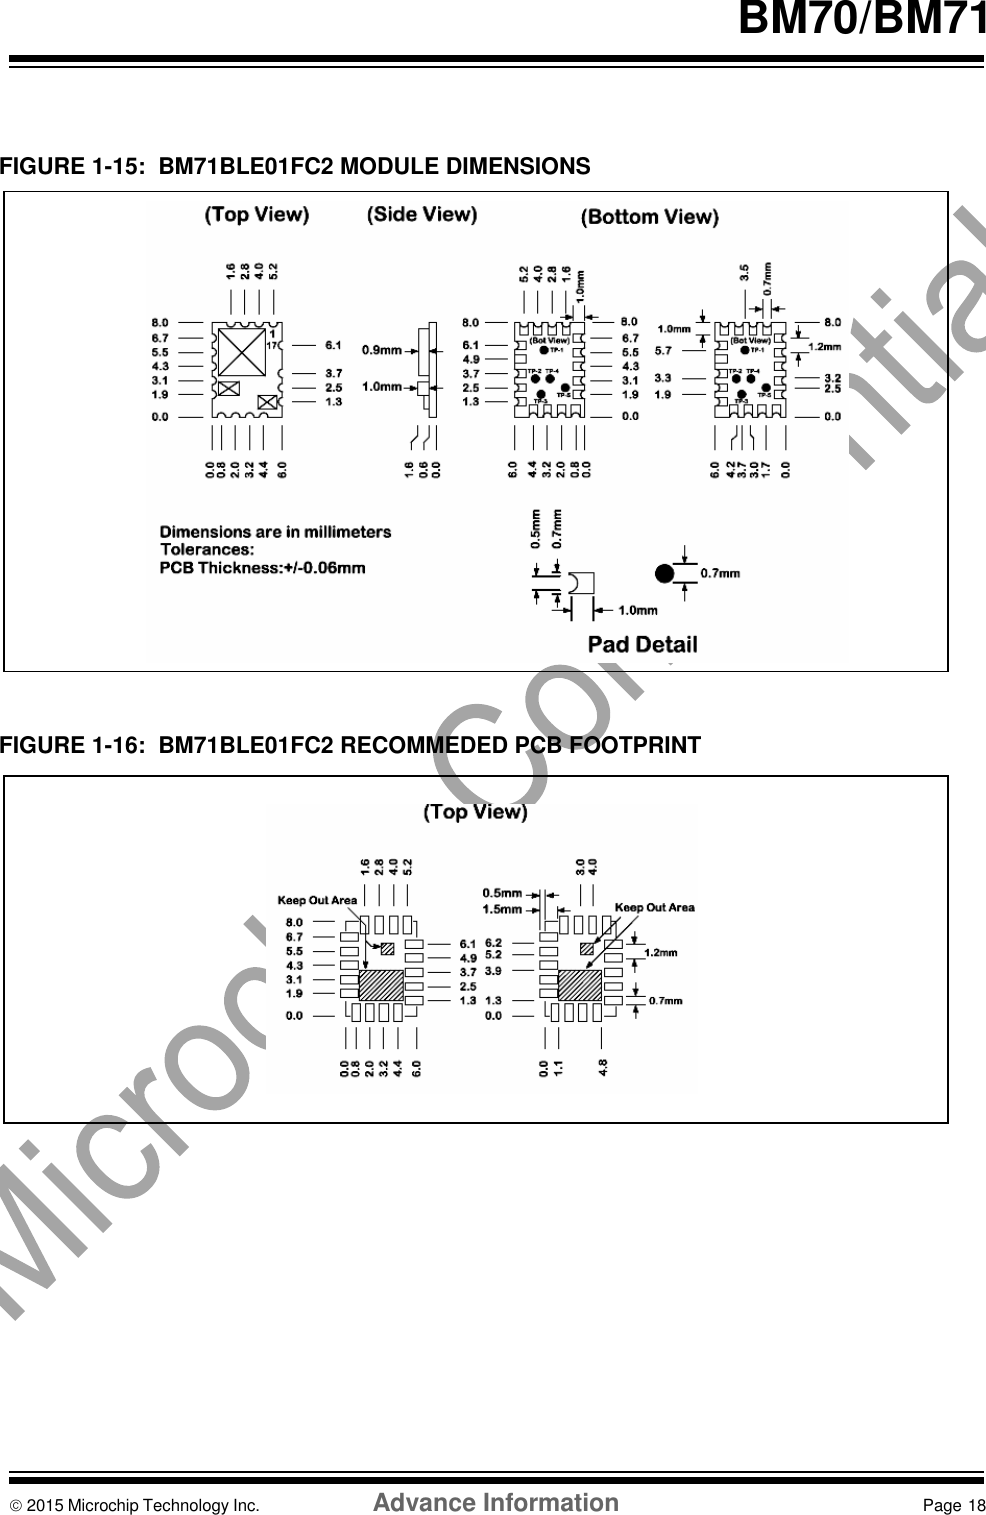     BM70/BM71    FIGURE 1-15:  BM71BLE01FC2 MODULE DIMENSIONS                      FIGURE 1-16:  BM71BLE01FC2 RECOMMEDED PCB FOOTPRINT                           2015 Microchip Technology Inc.  Advance Information  Page 18    